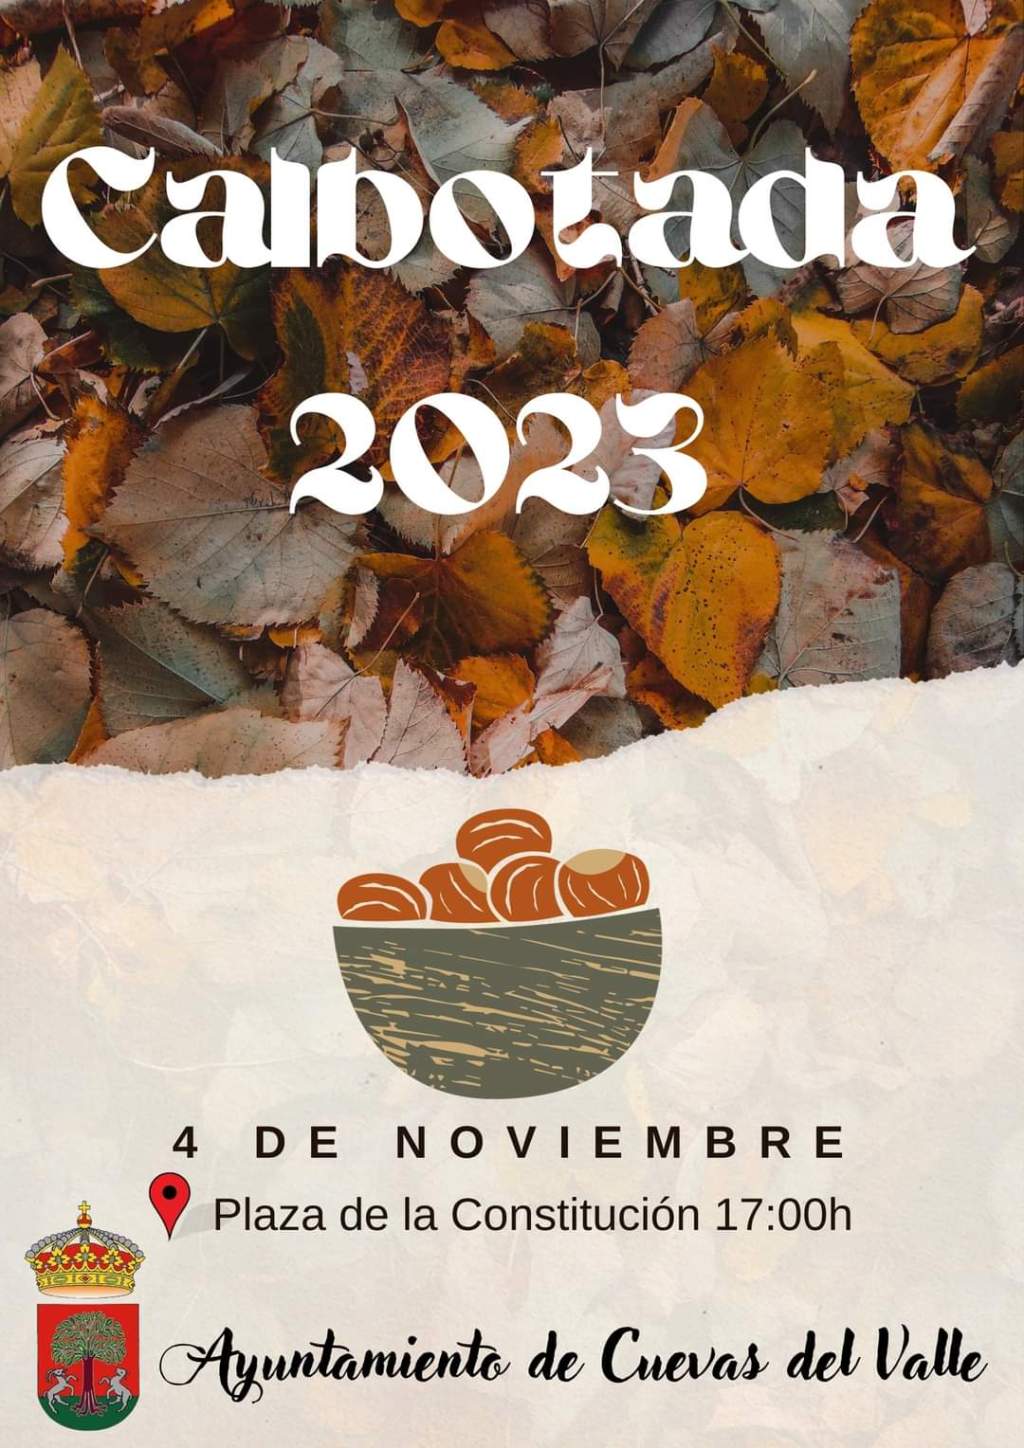 Calbotada 2023 en Cuevas del Valle